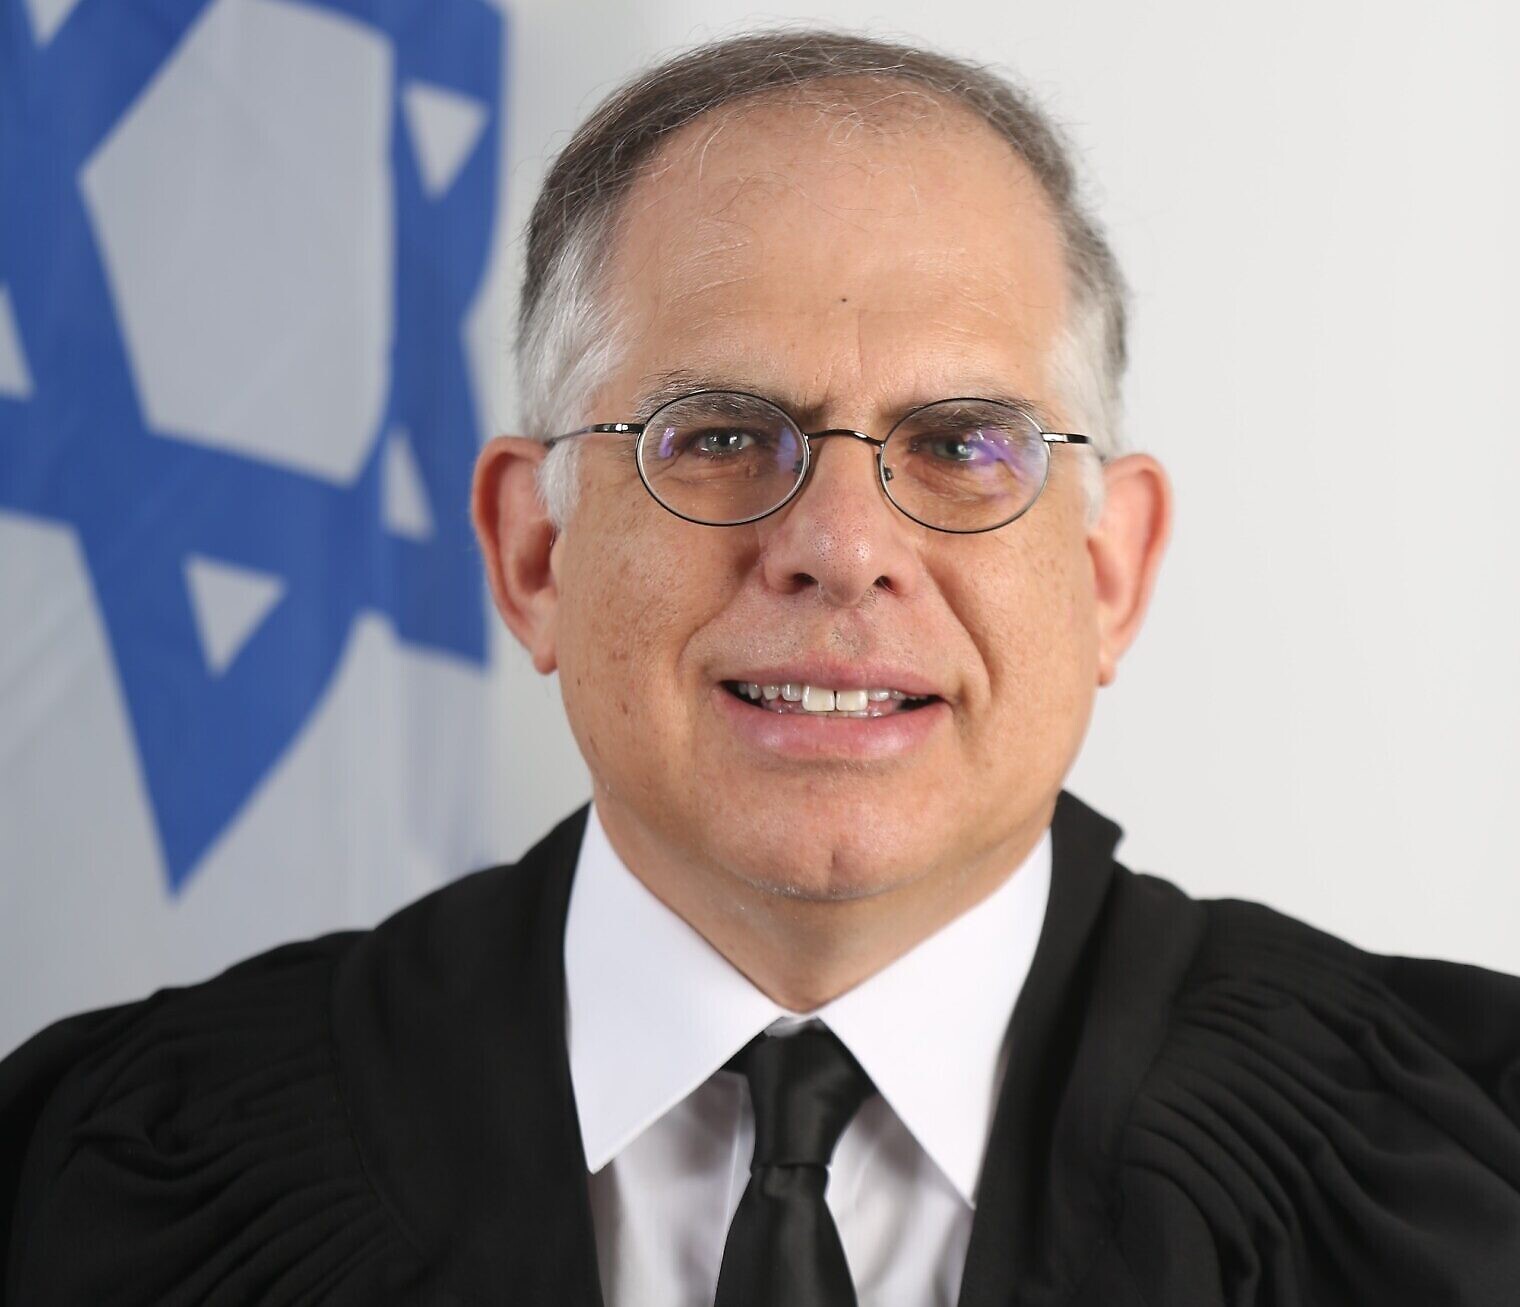 השופט שי יניב, סגן נשיא בית המשפט המחוזי תל אביב (צילום: הרשות השופטת)